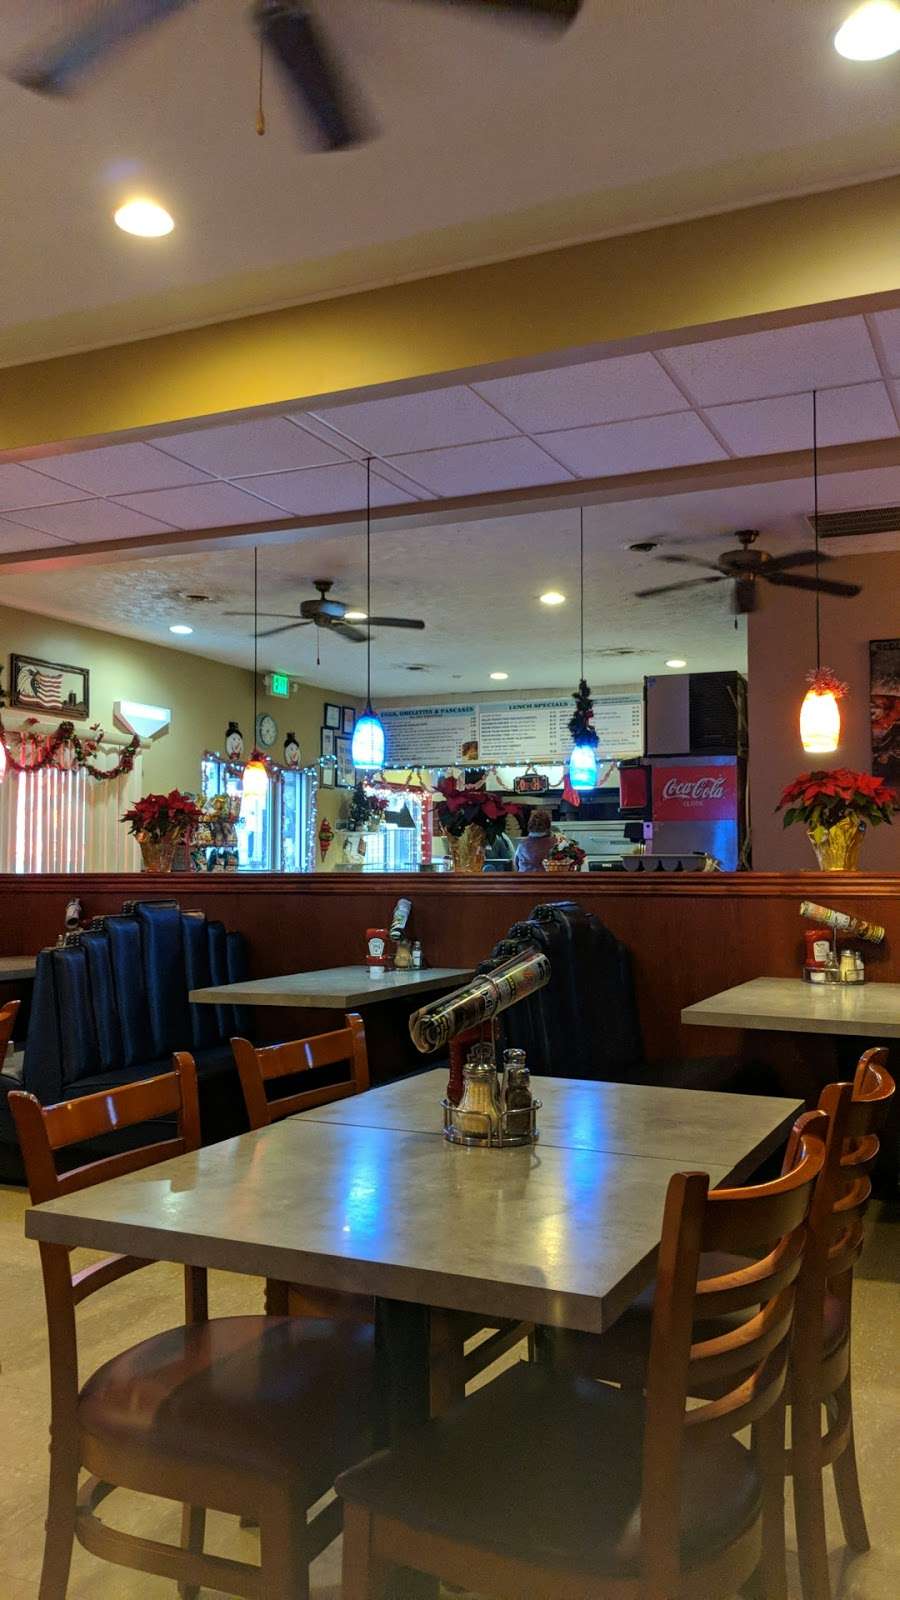 Four Seas Pizza Restaurant | 223 E Main St A, Rising Sun, MD 21911, USA | Phone: (410) 658-0888